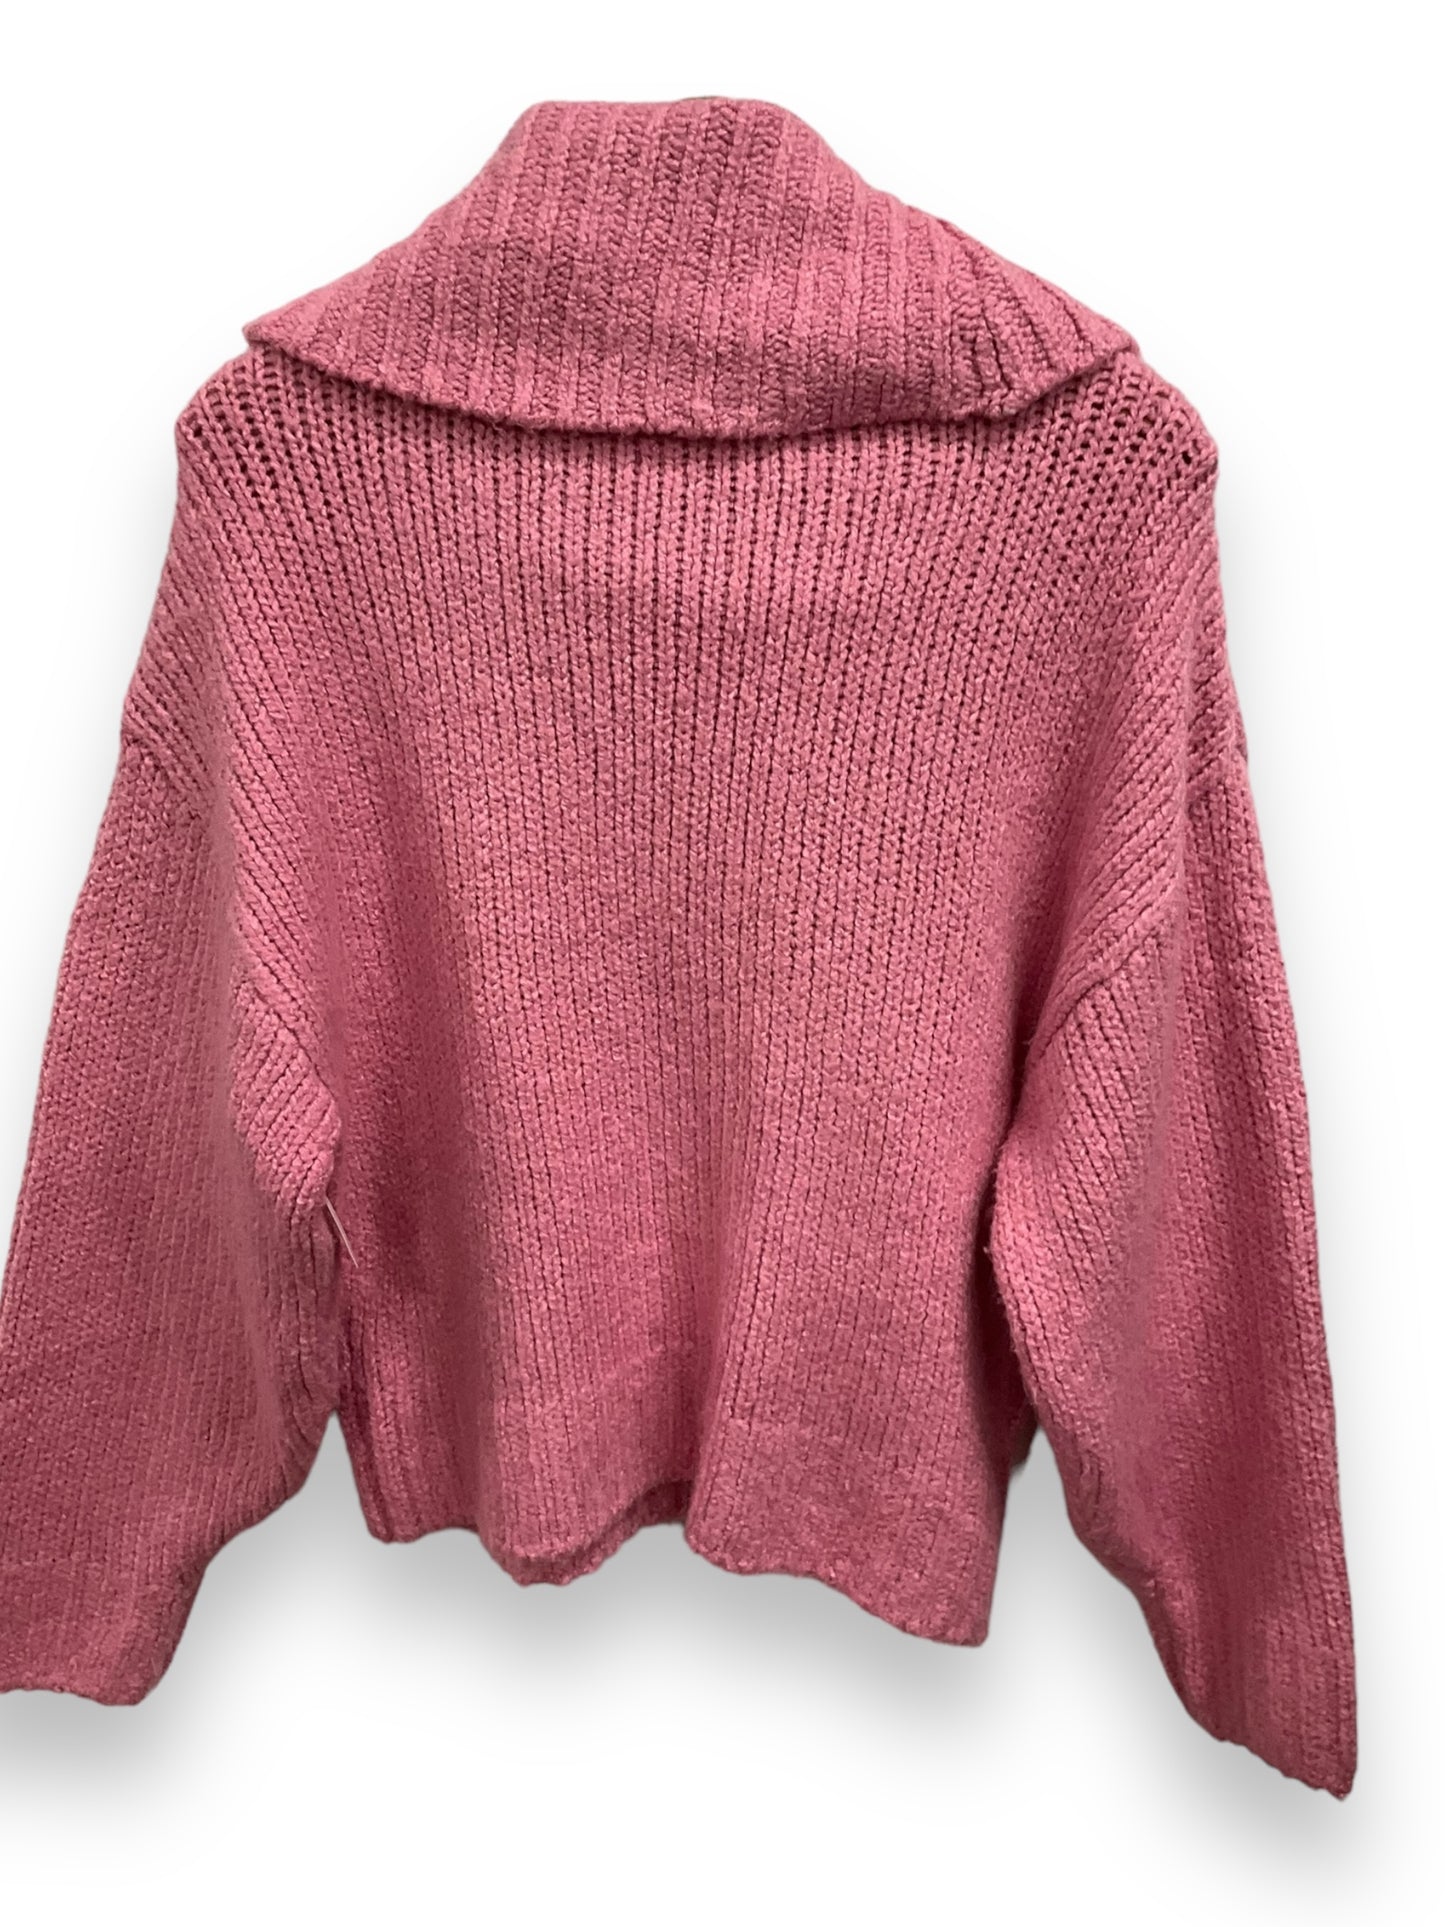 Sweater By Pilcro  Size: Xxs